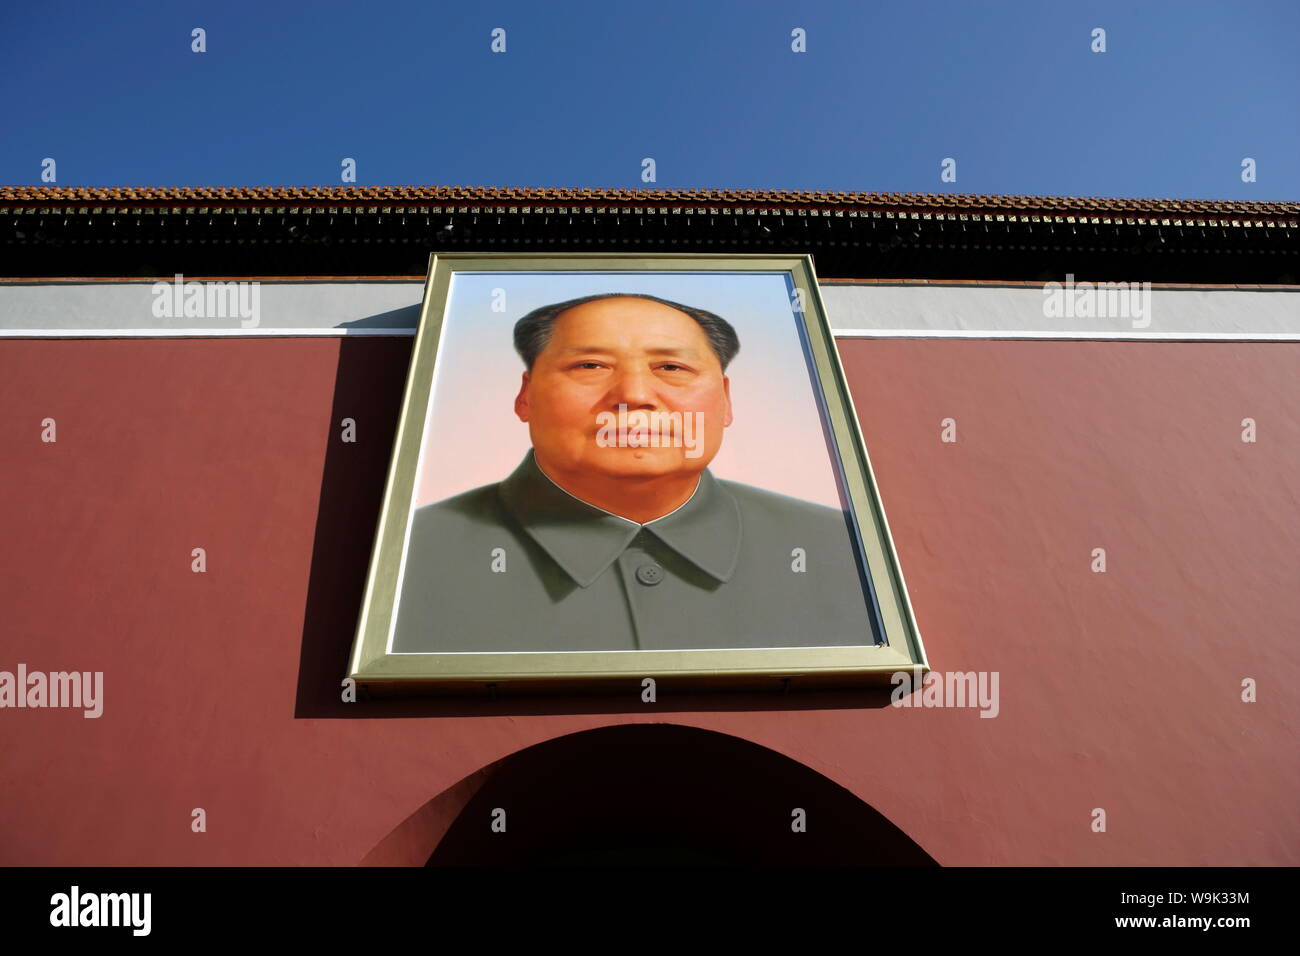 Portrait géant de Mao Tzedong sur la porte céleste de la Cité Interdite, la Place Tiananmen, à Beijing, Chine, Asie Banque D'Images